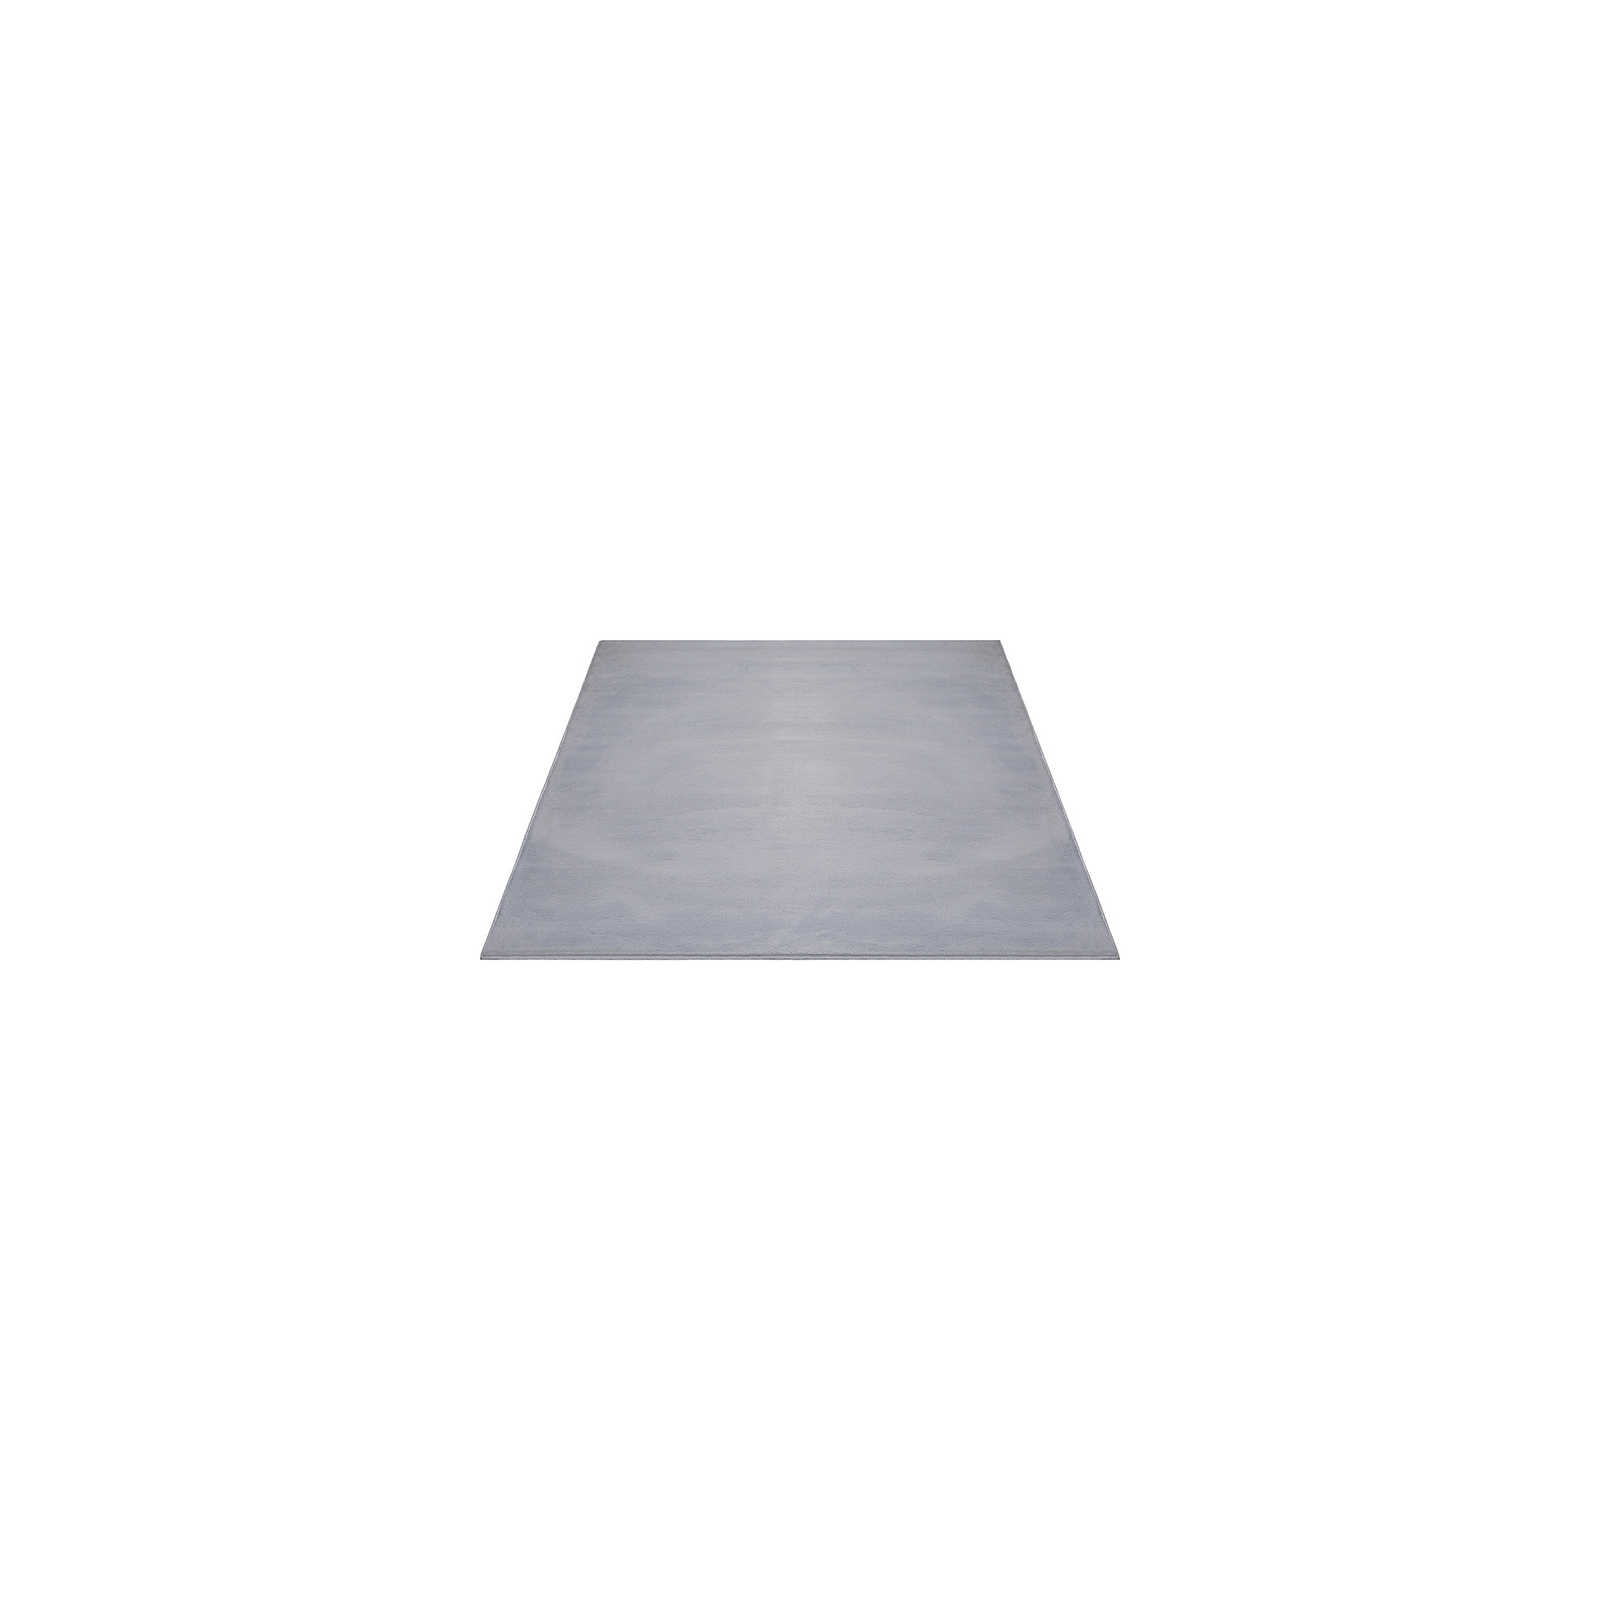 Cómoda alfombra de pelo alto en gris suave - 140 x 70 cm
